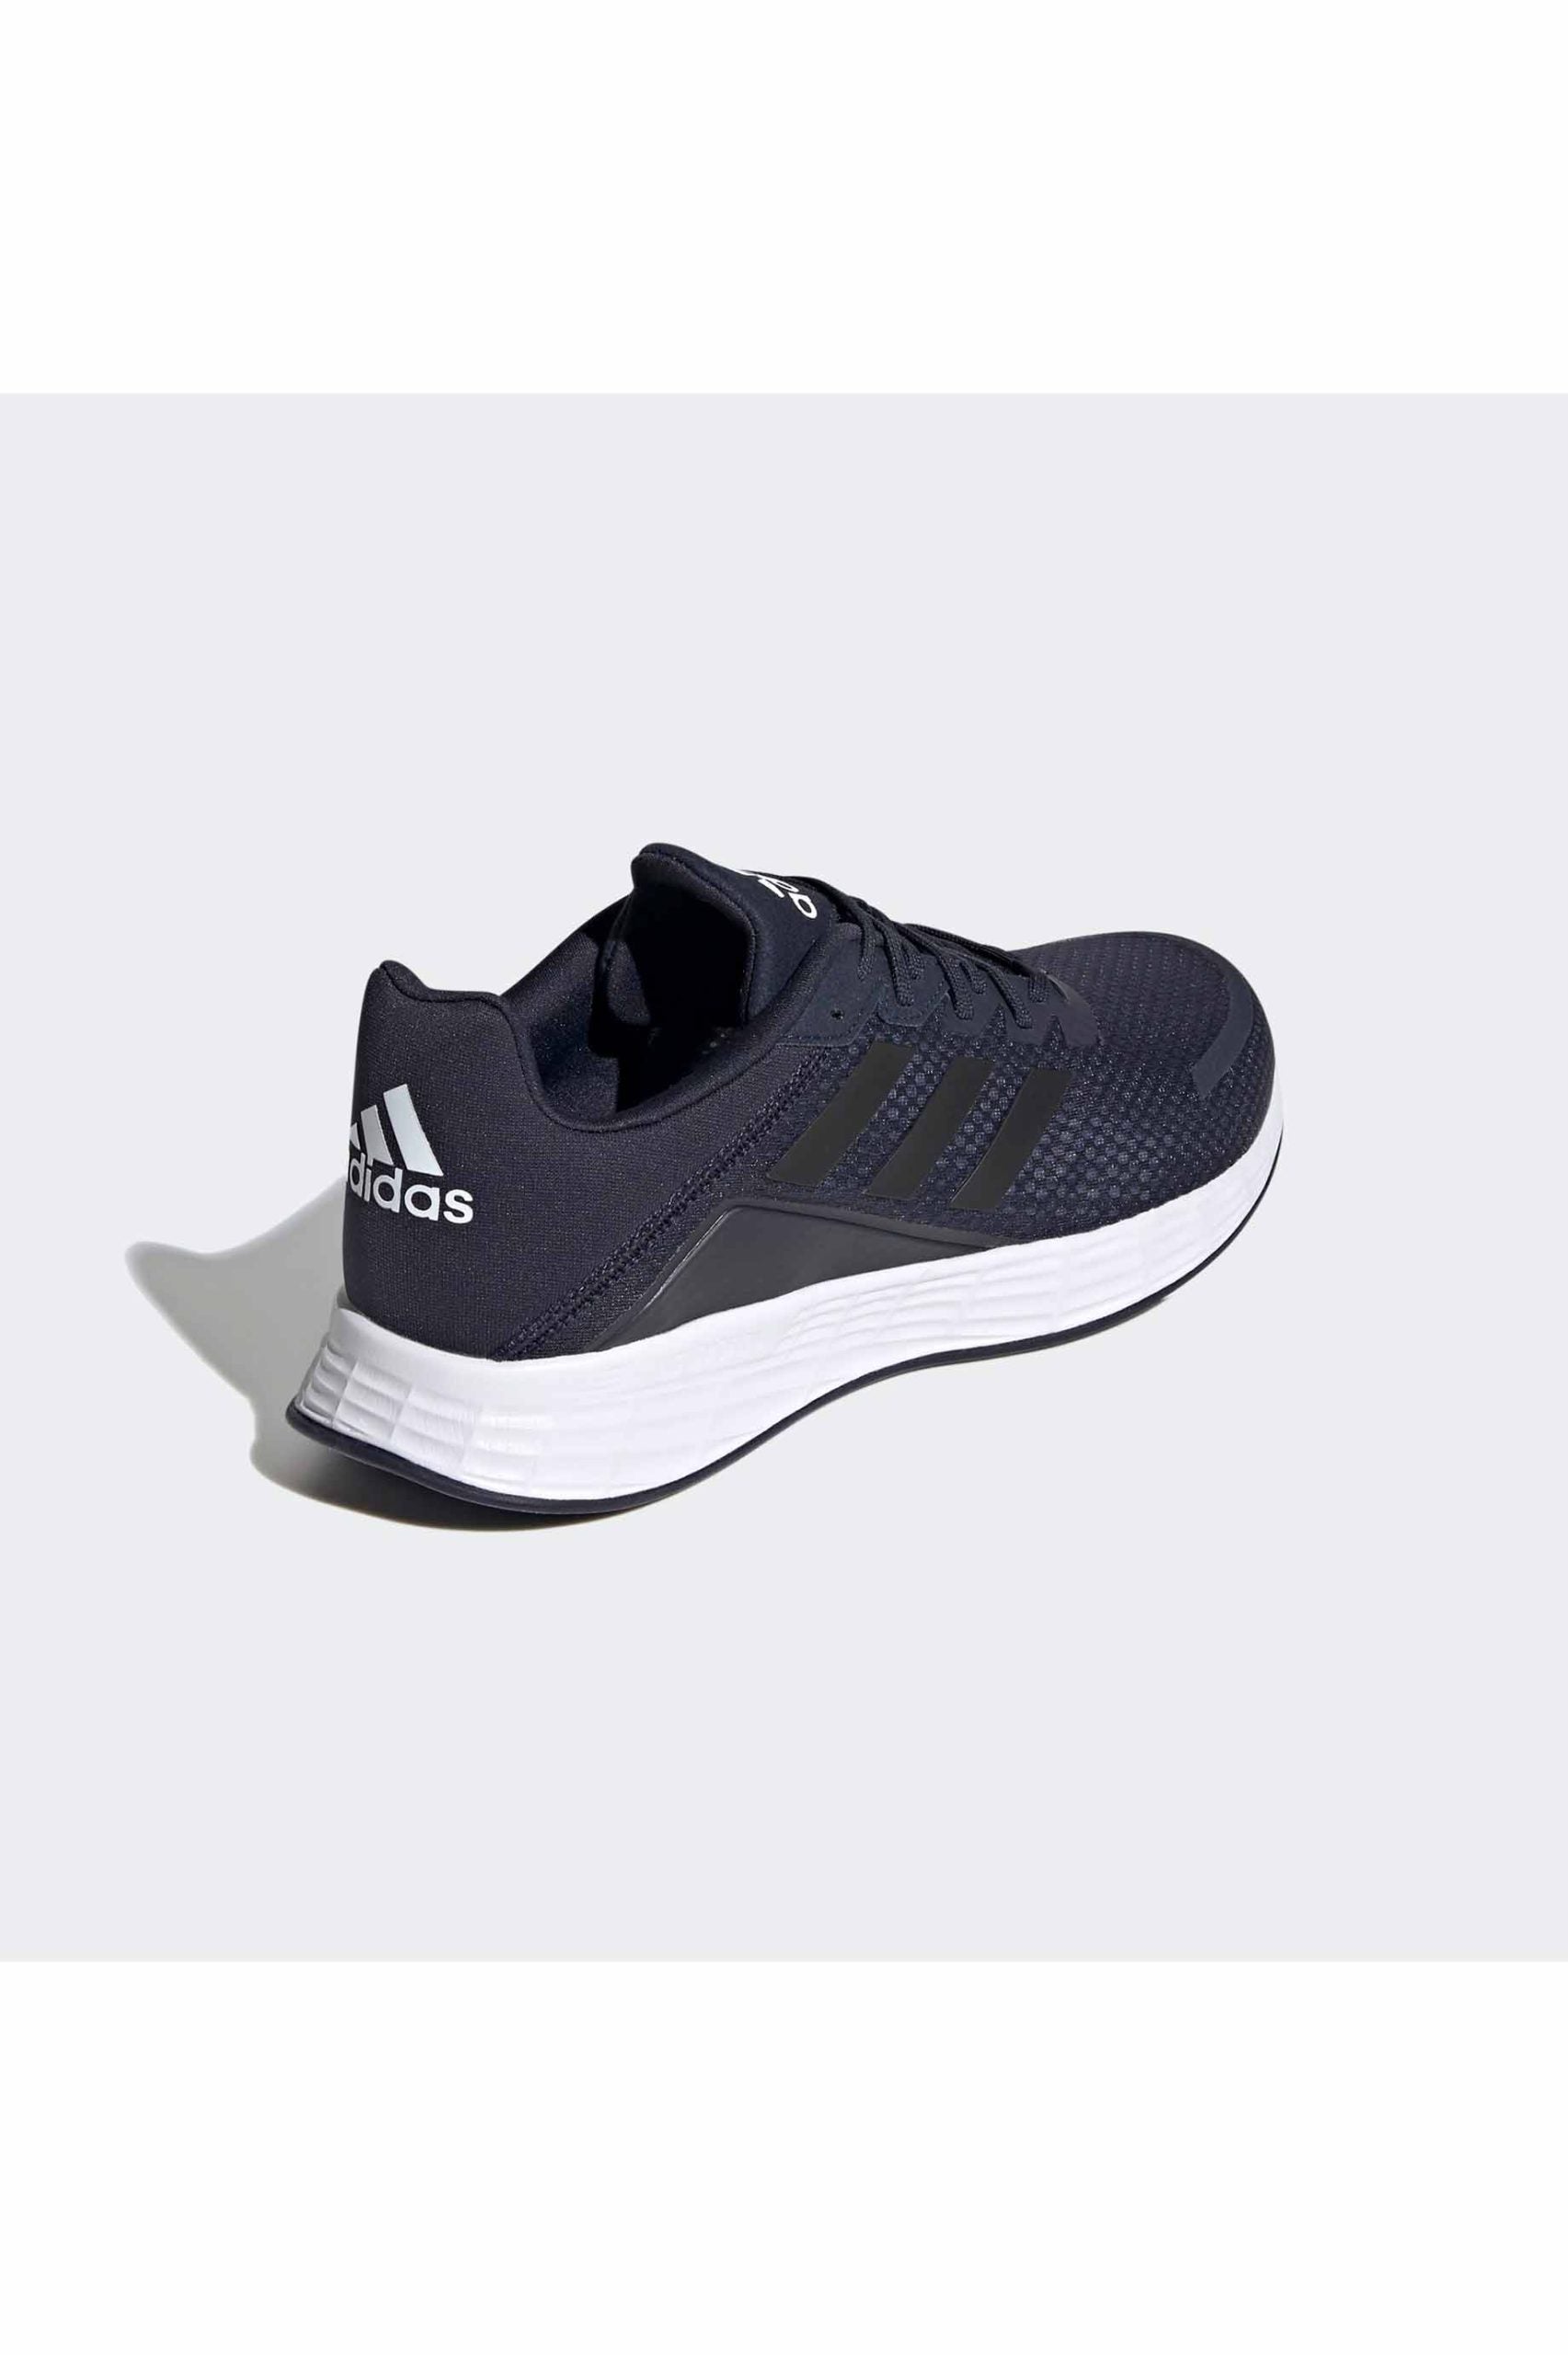 Adidas Mens Duramo SL - Ink/Black/Indigo